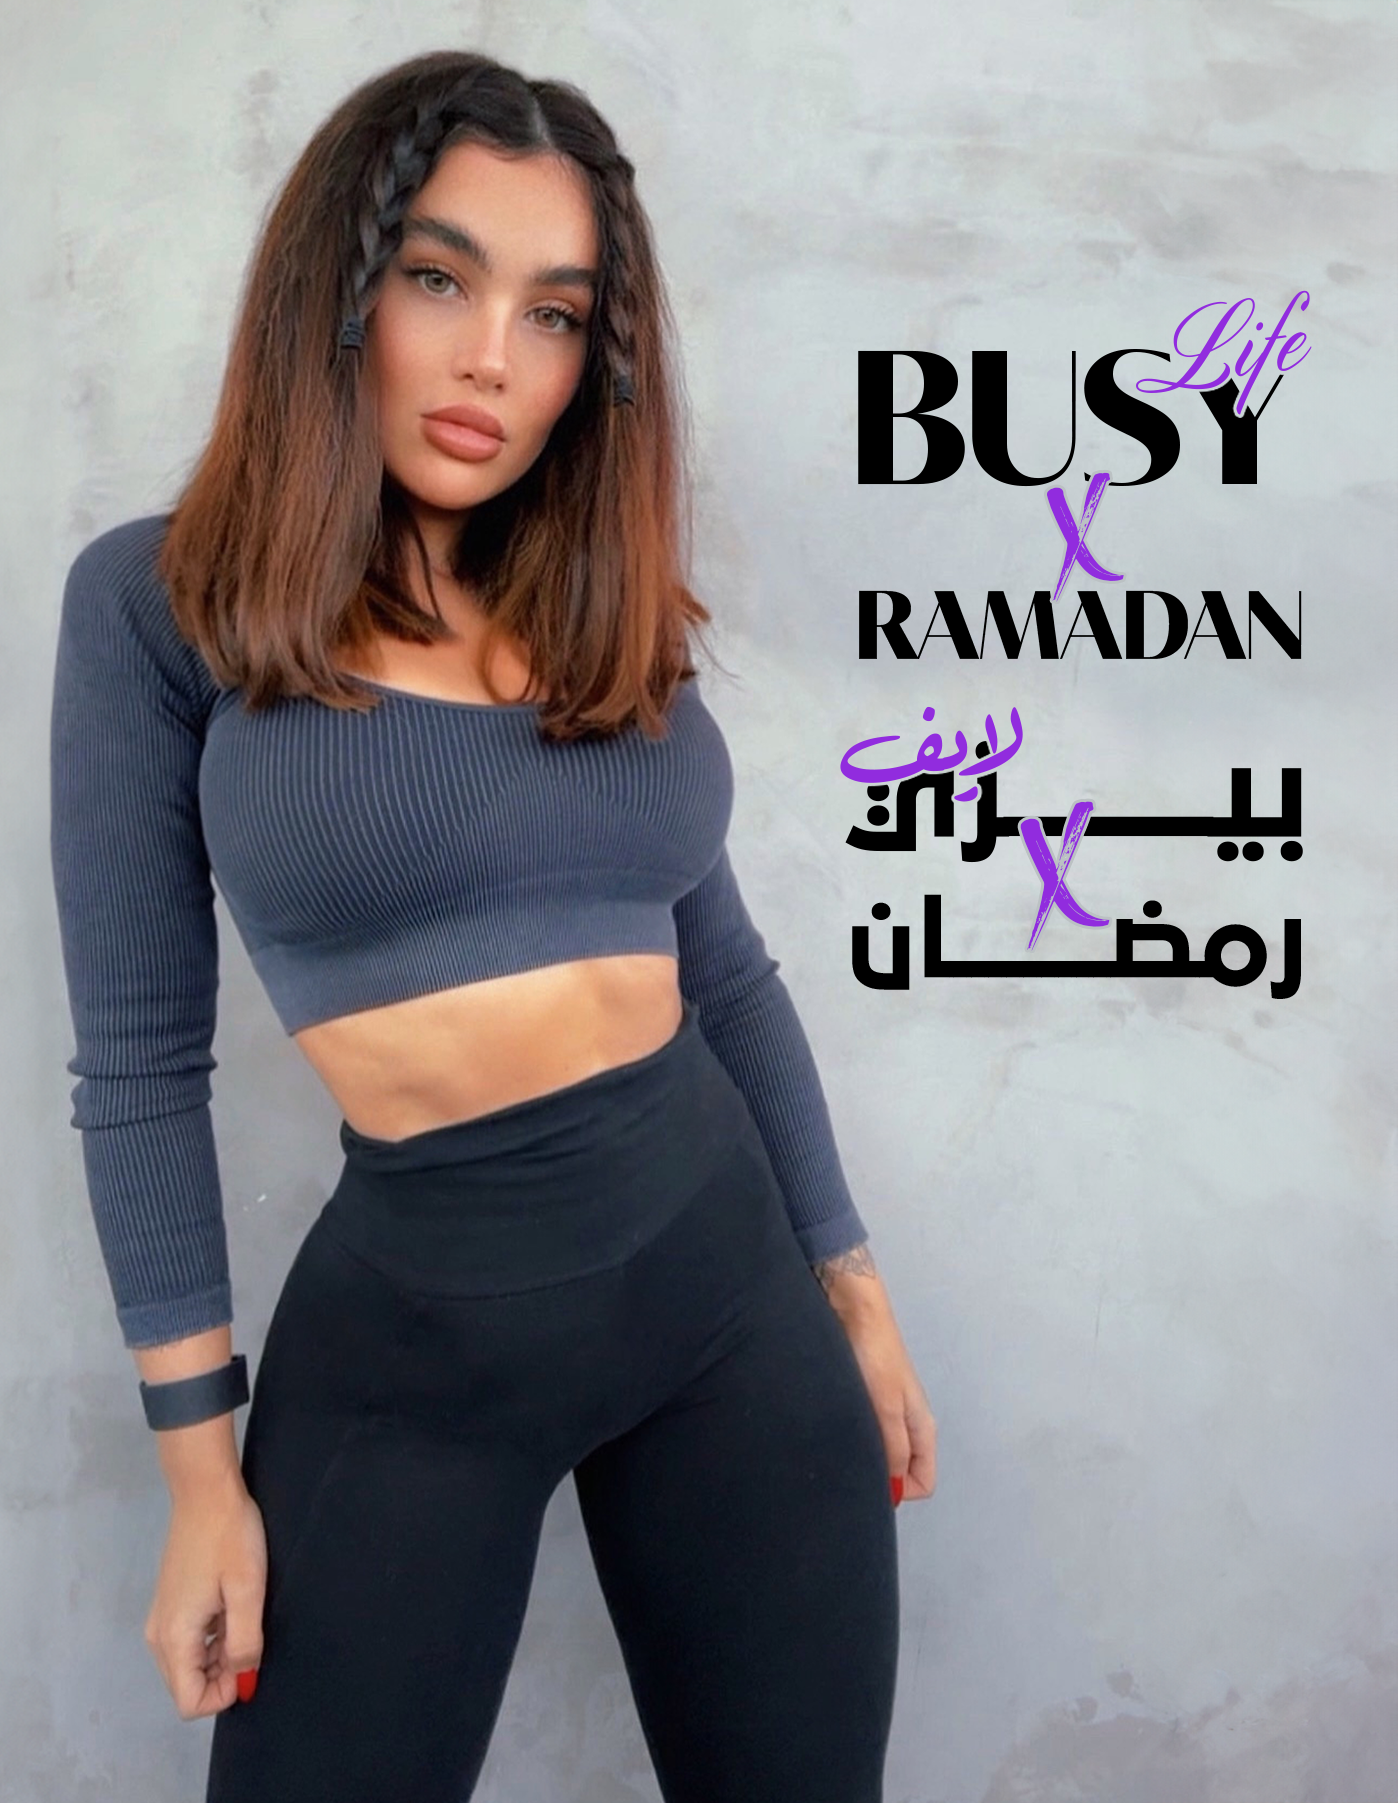 Busy life X Ramadan